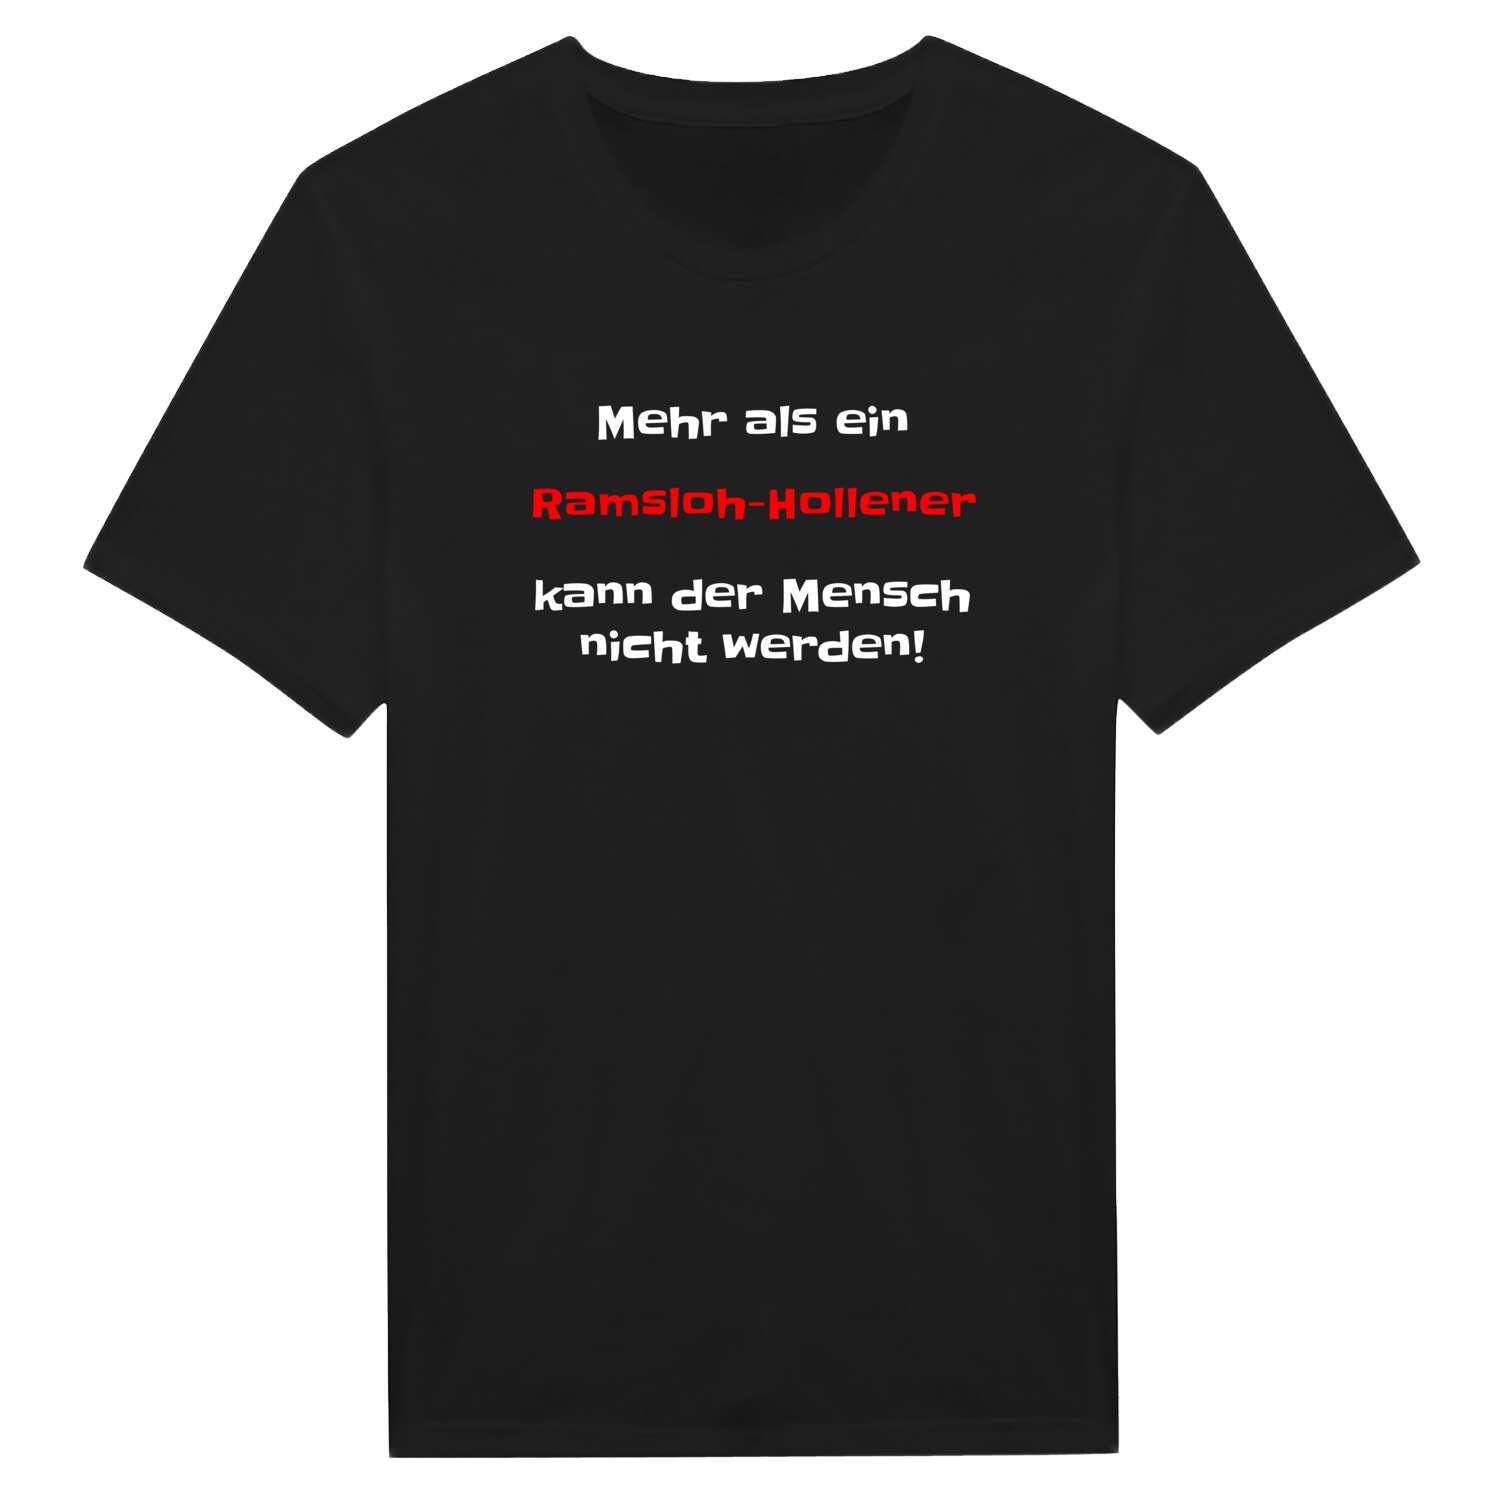 Ramsloh-Hollen T-Shirt »Mehr als ein«